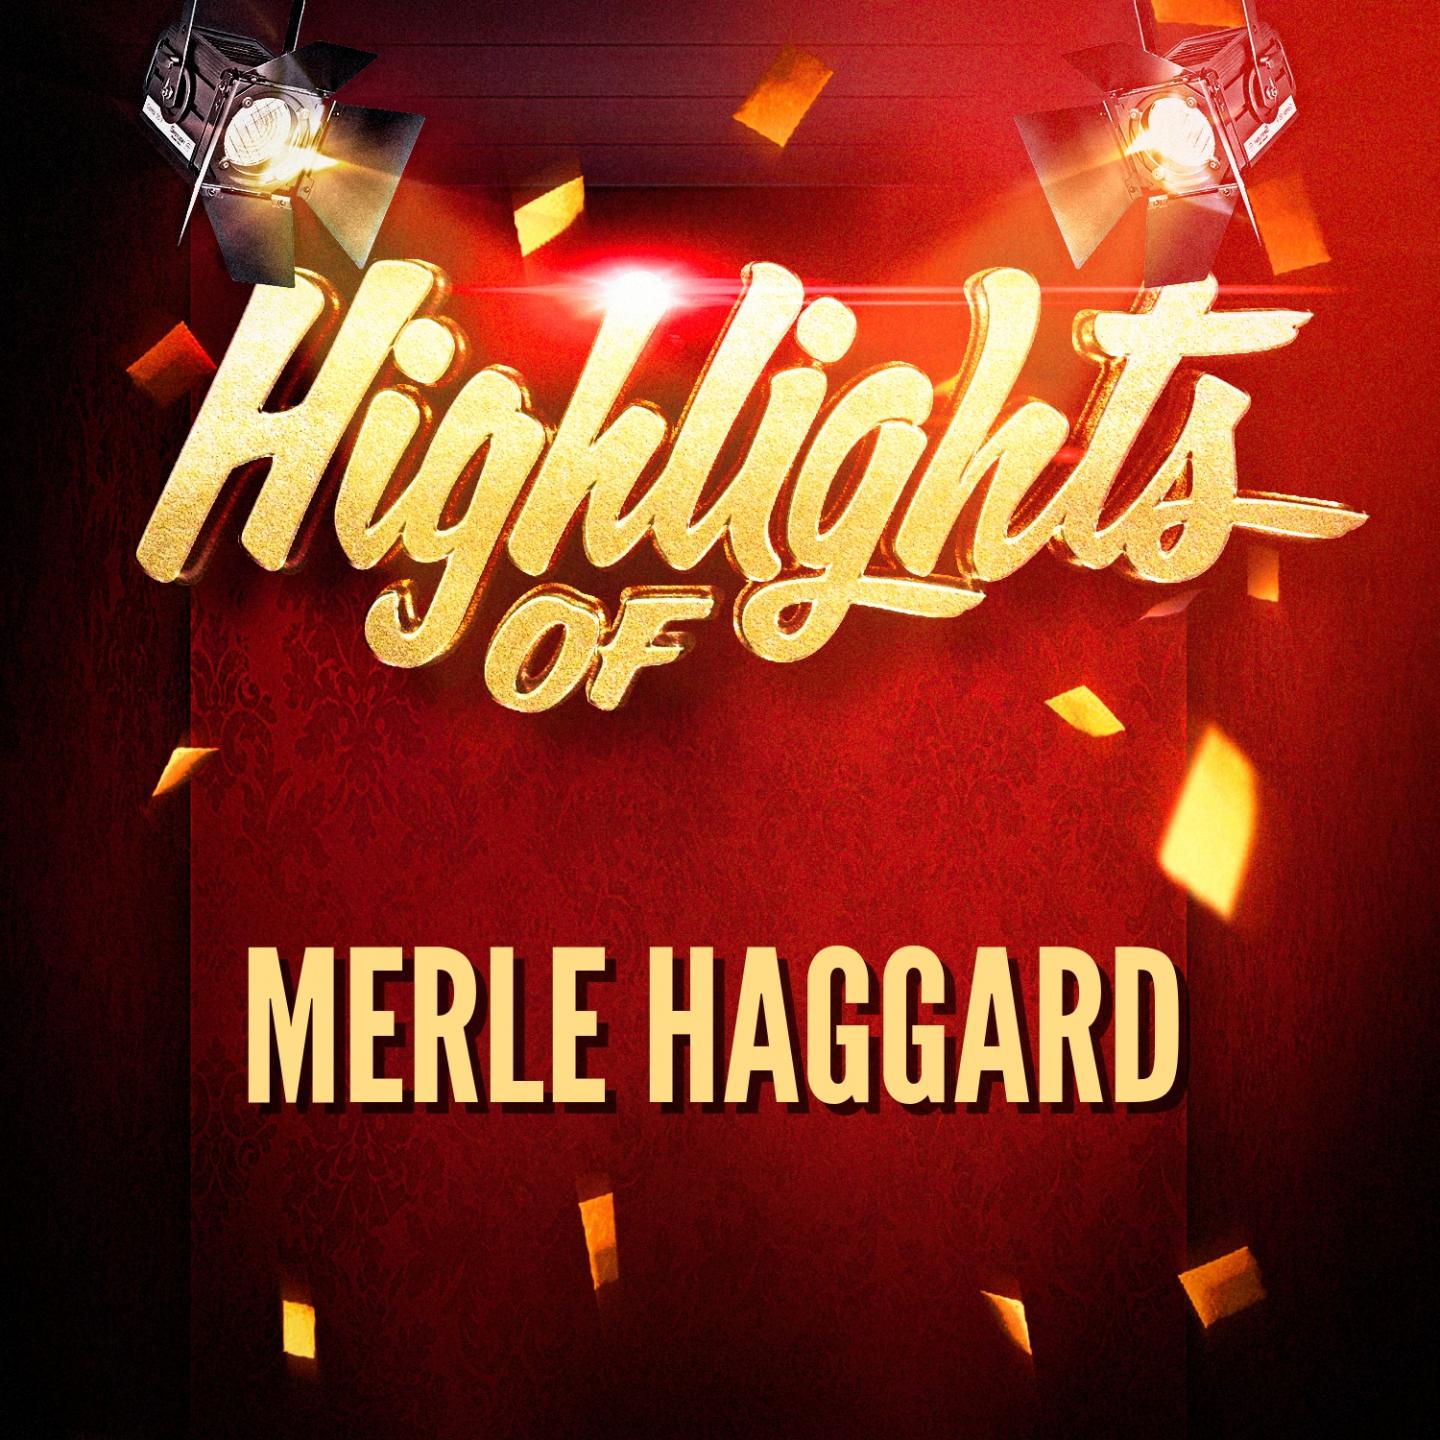 Highlights of Merle Haggard